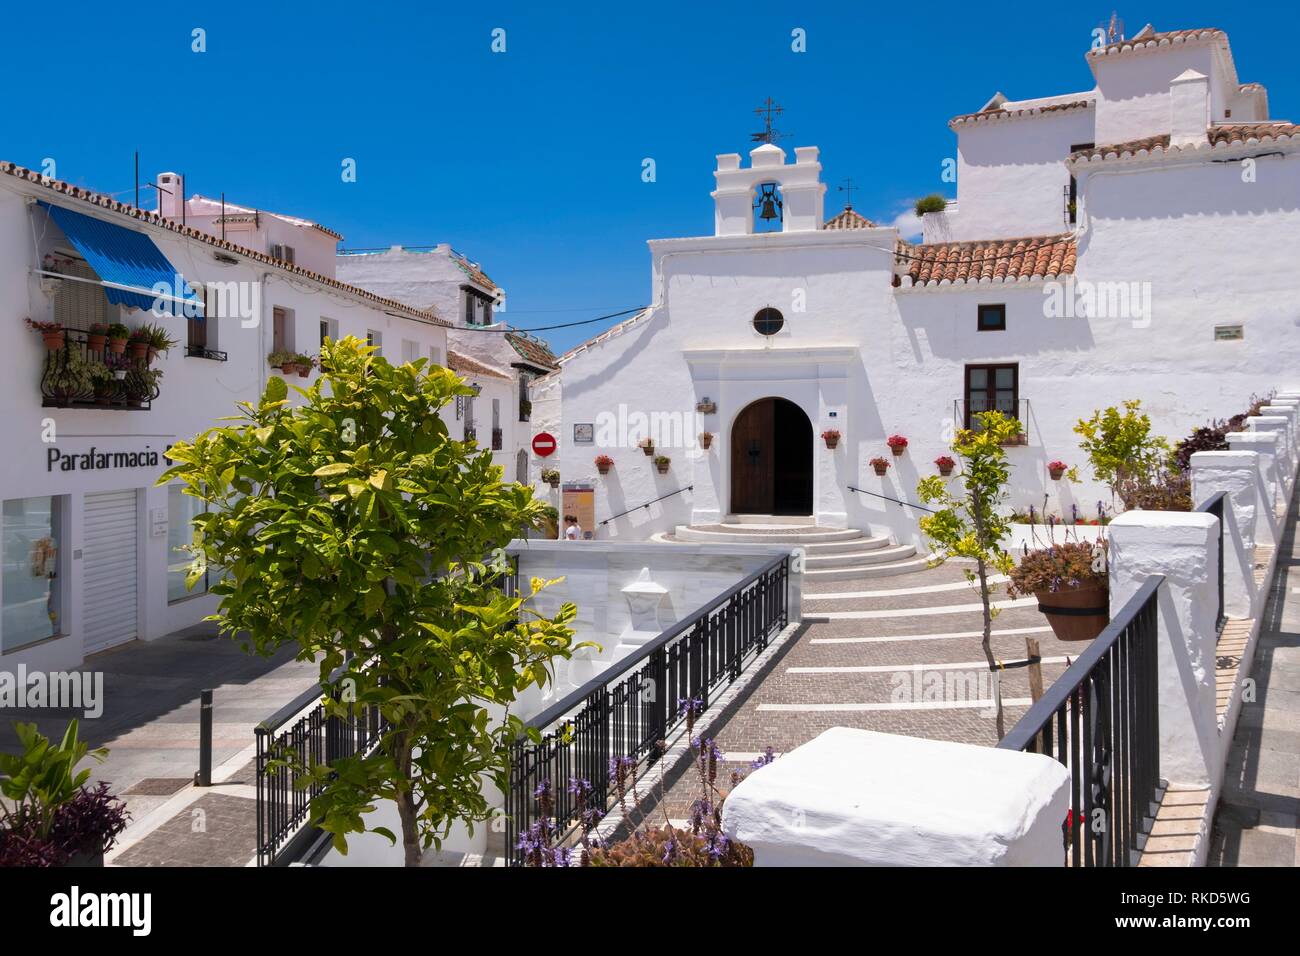 Ermita de Santa Ana. Mijas white town. Malaga province, Andalusia, Spain Stock Photo